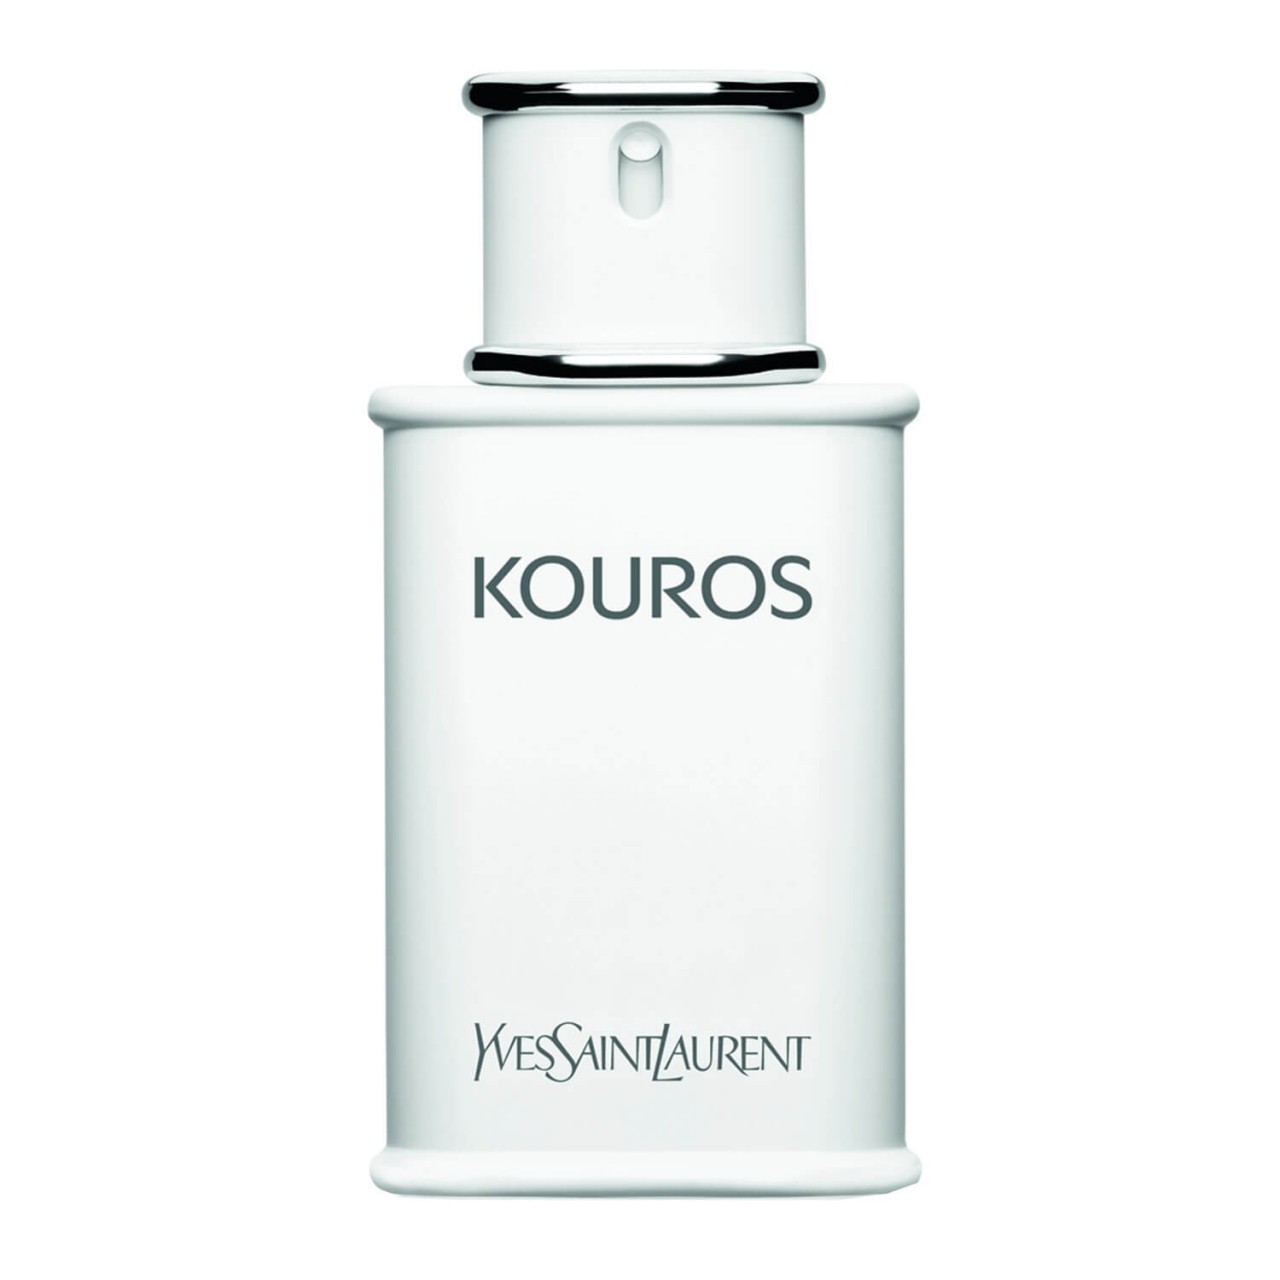 Kouros - Eau de Toilette von Yves Saint Laurent